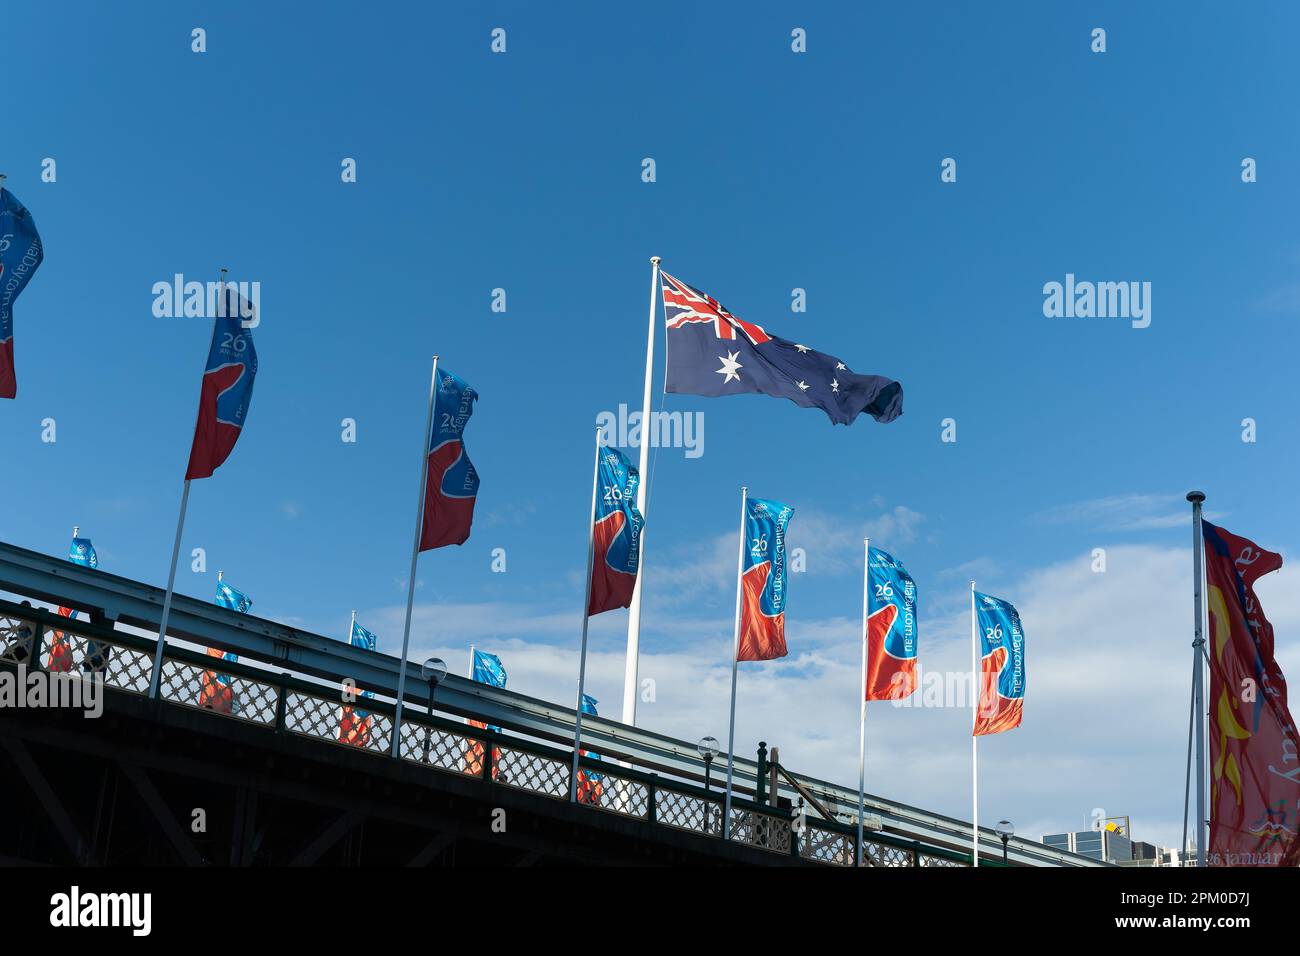 Sydney Australien - 25 2011. Januar; Banner für den Australientag und australische Flagge, die im Wind auf dem Geländer der Fußgängerbrücke flattern. Stockfoto